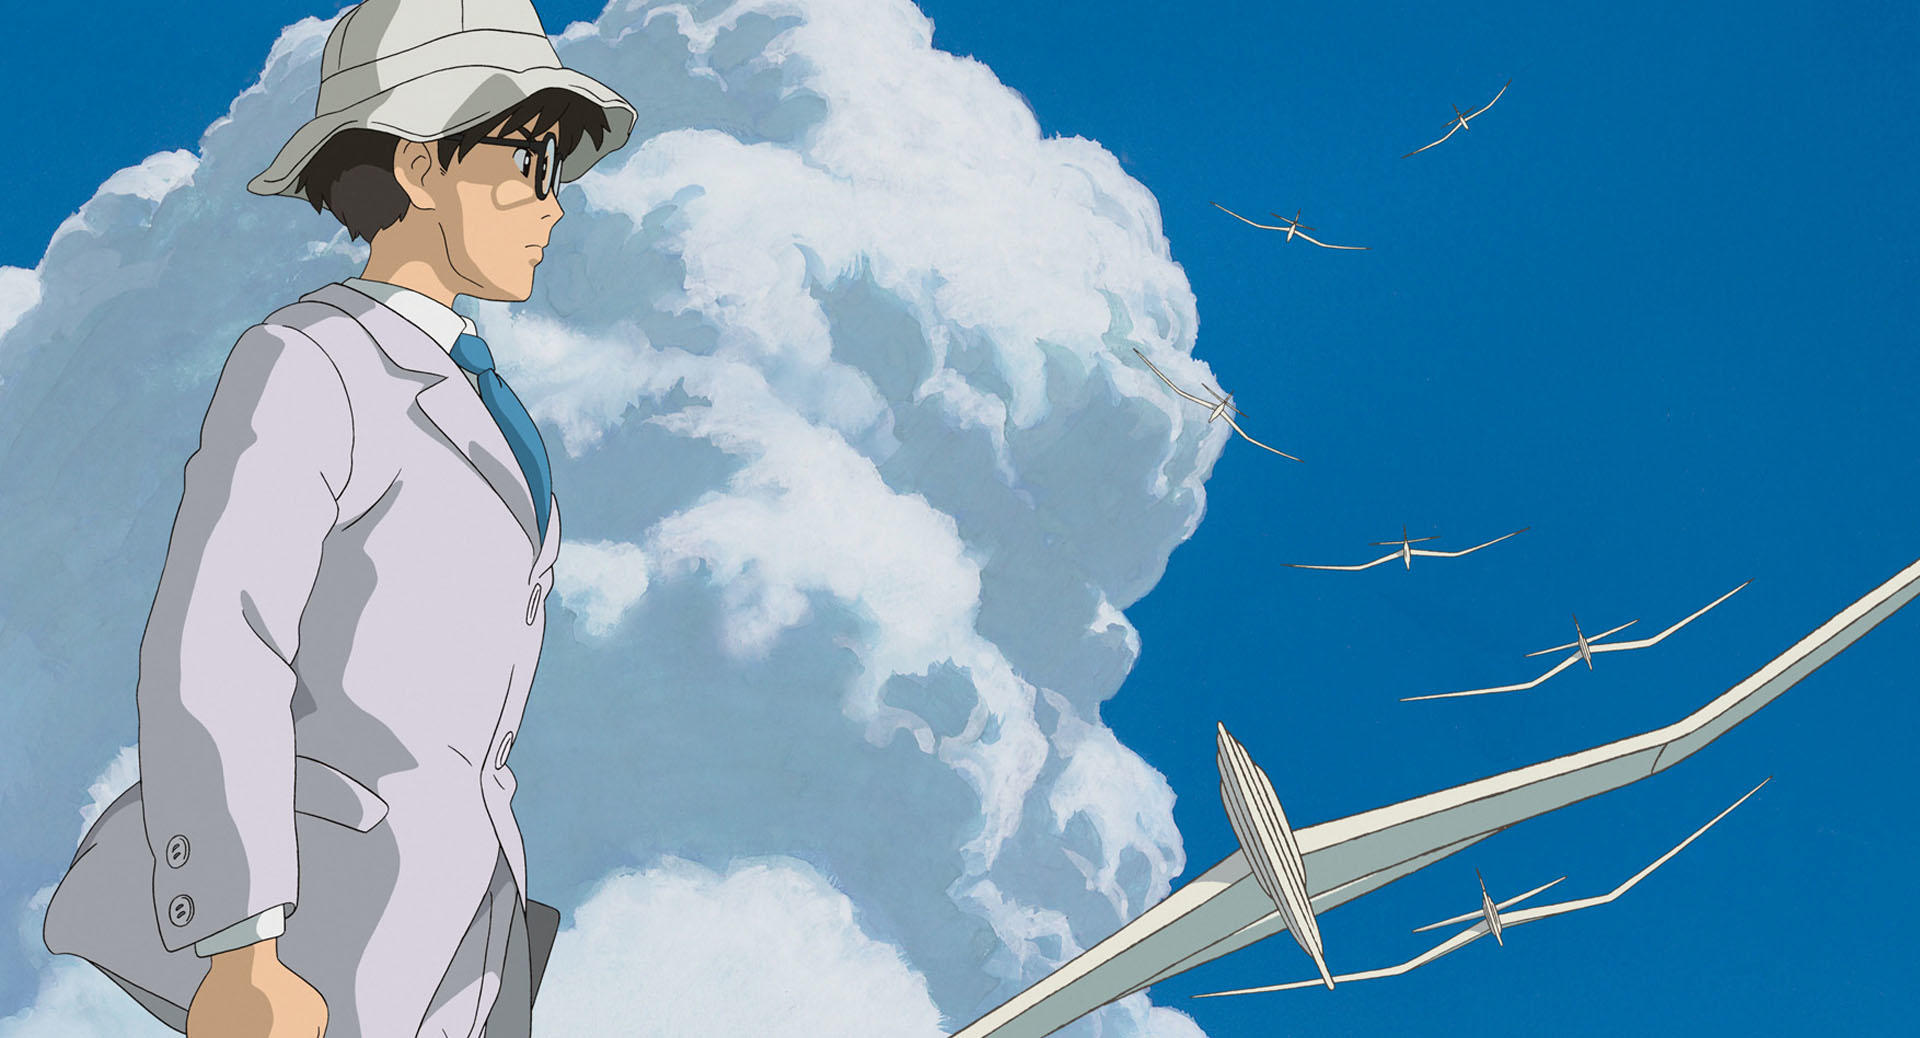 Jiro Horikoshi from the animated movie"The Wind Rises" (Miyazaki 2013)